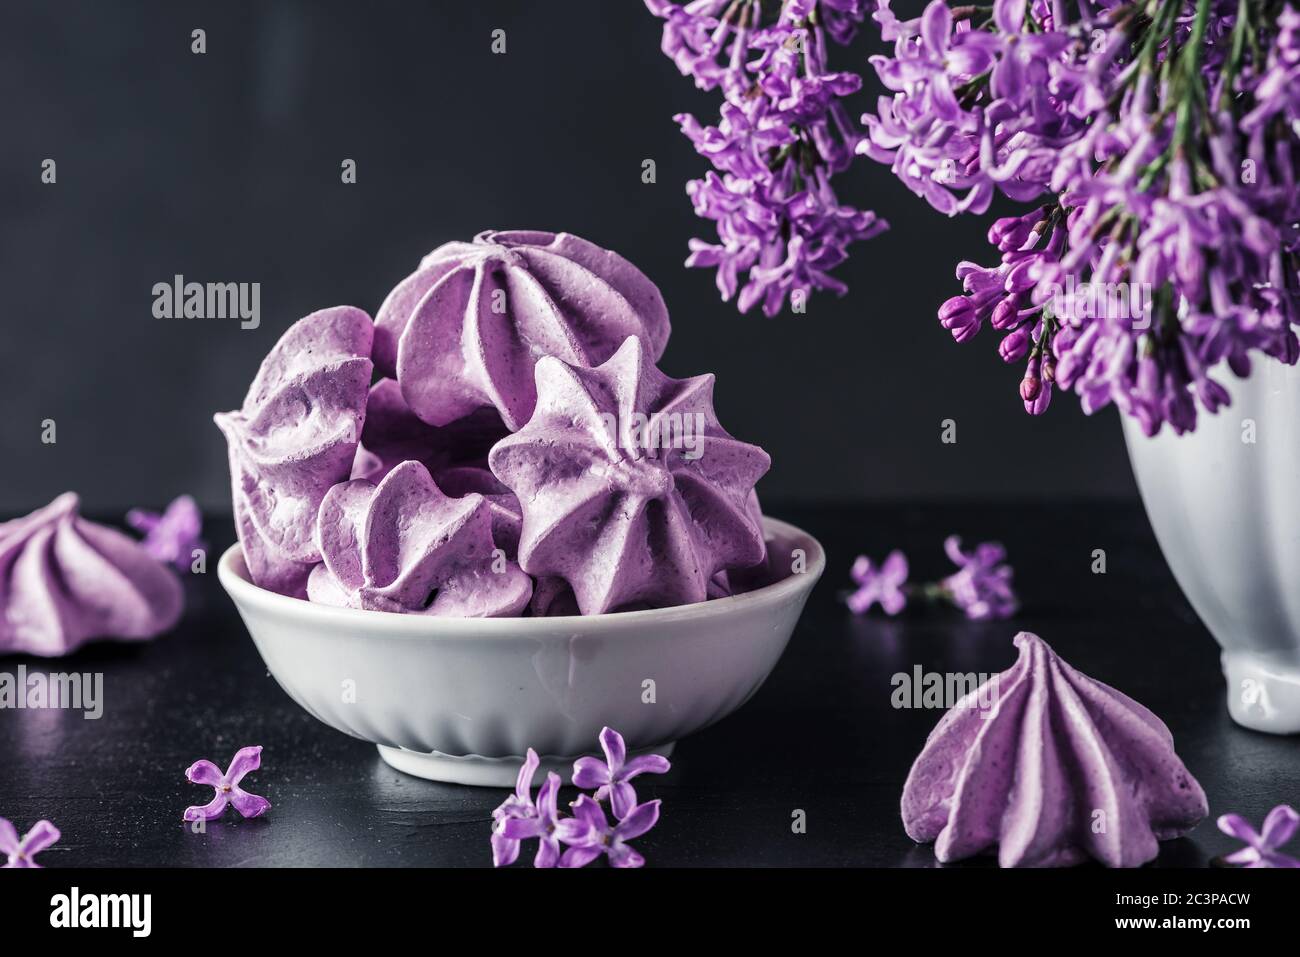 Biscotti viola meringa con fiori lilla in vaso su sfondo scuro. Tasto basso. Vita still. Scatto artistico Foto Stock